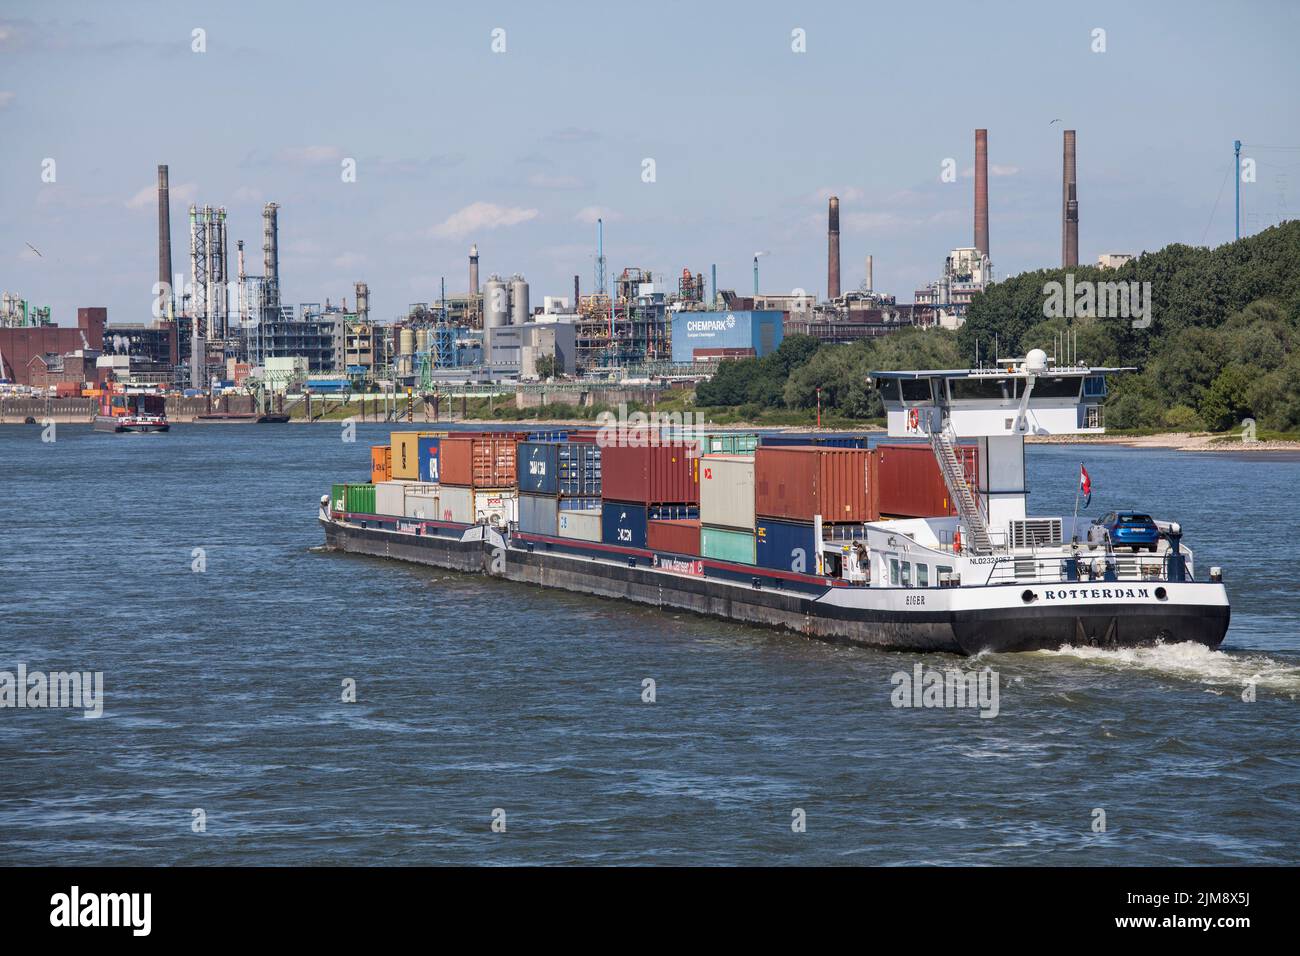 Containerschiff auf dem Rhein, Blick auf den Chempark, ehemals bekannt als Bayer-Werk, Leverkusen, Nordrhein-Westfalen, Deutschland. Containerschiff Stockfoto